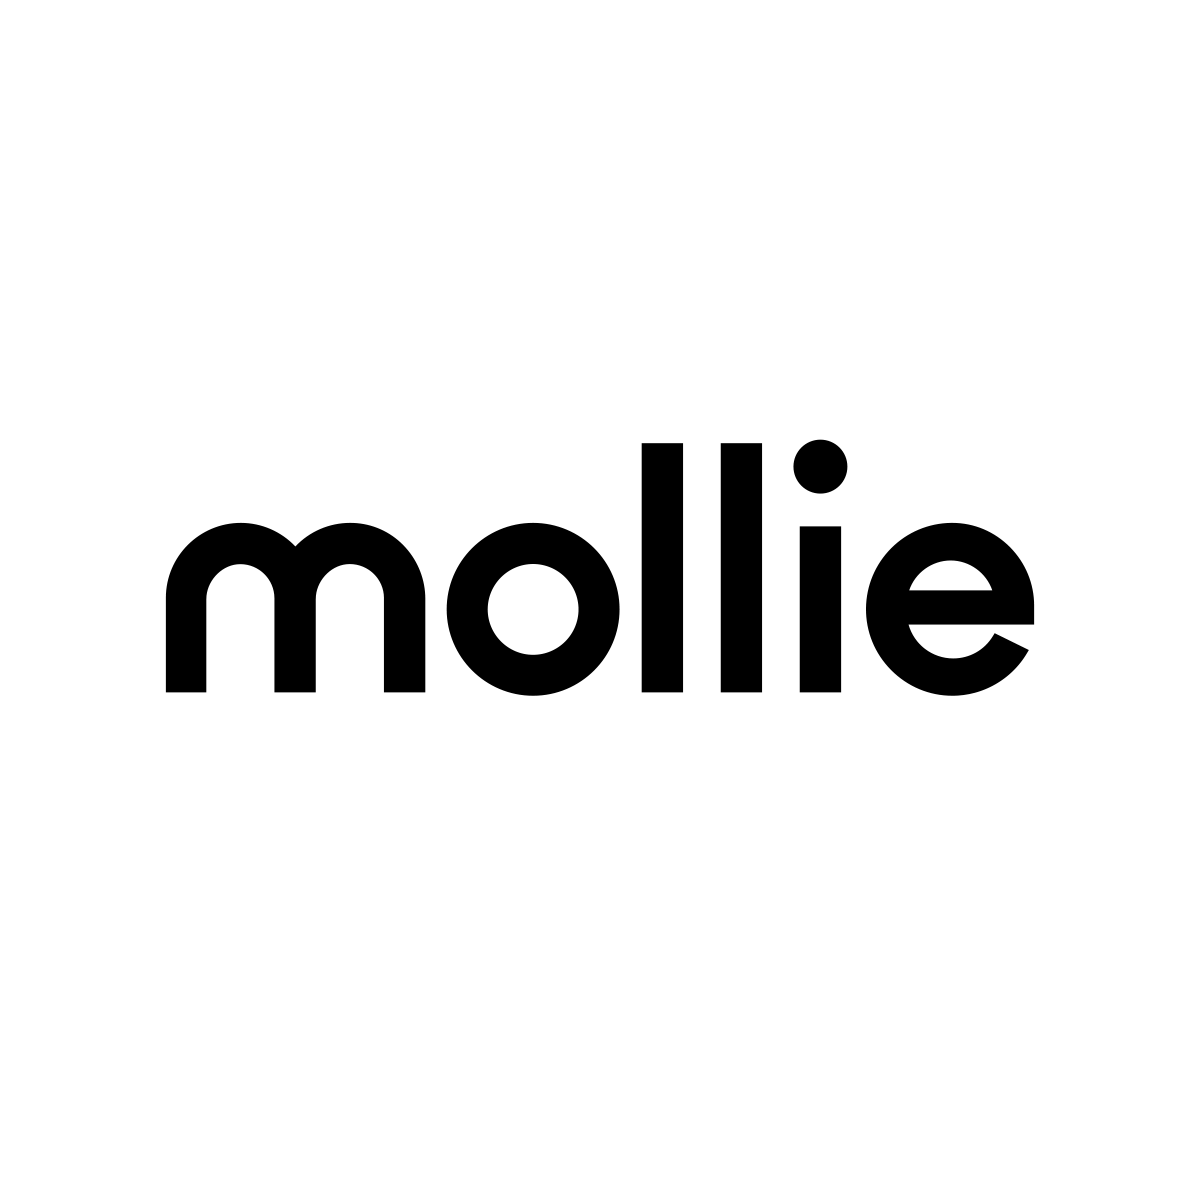 DM Design - webshop ontwikkelaar, webshop laten maken, Mollie